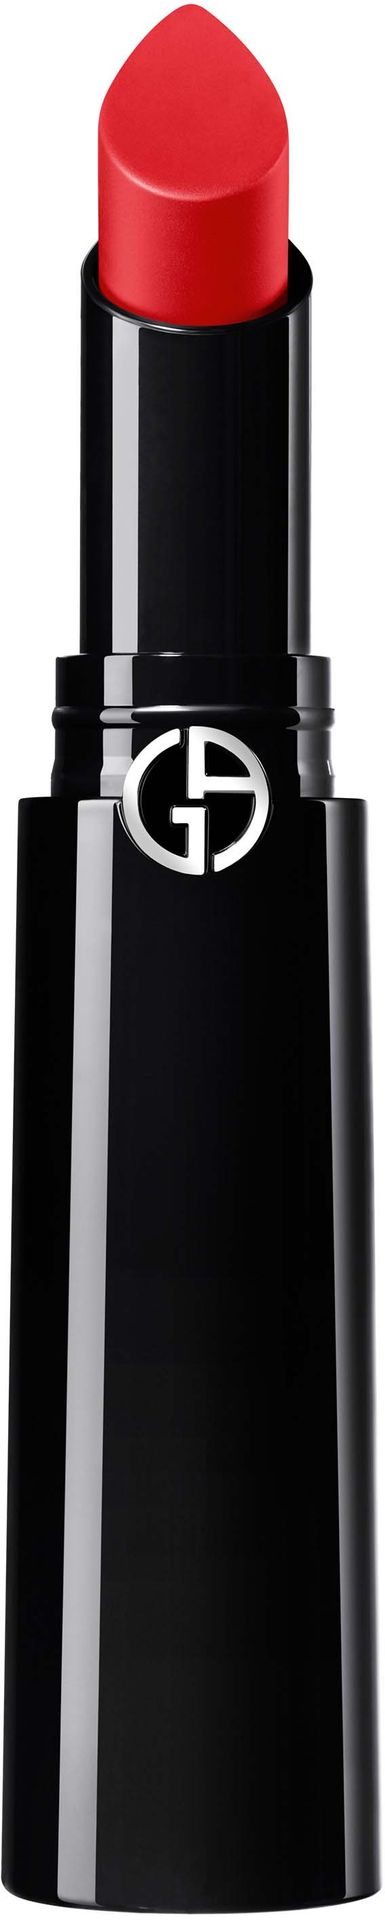 Giorgio Armani Lip Power Vivid Color Long Wear Lipstick 301